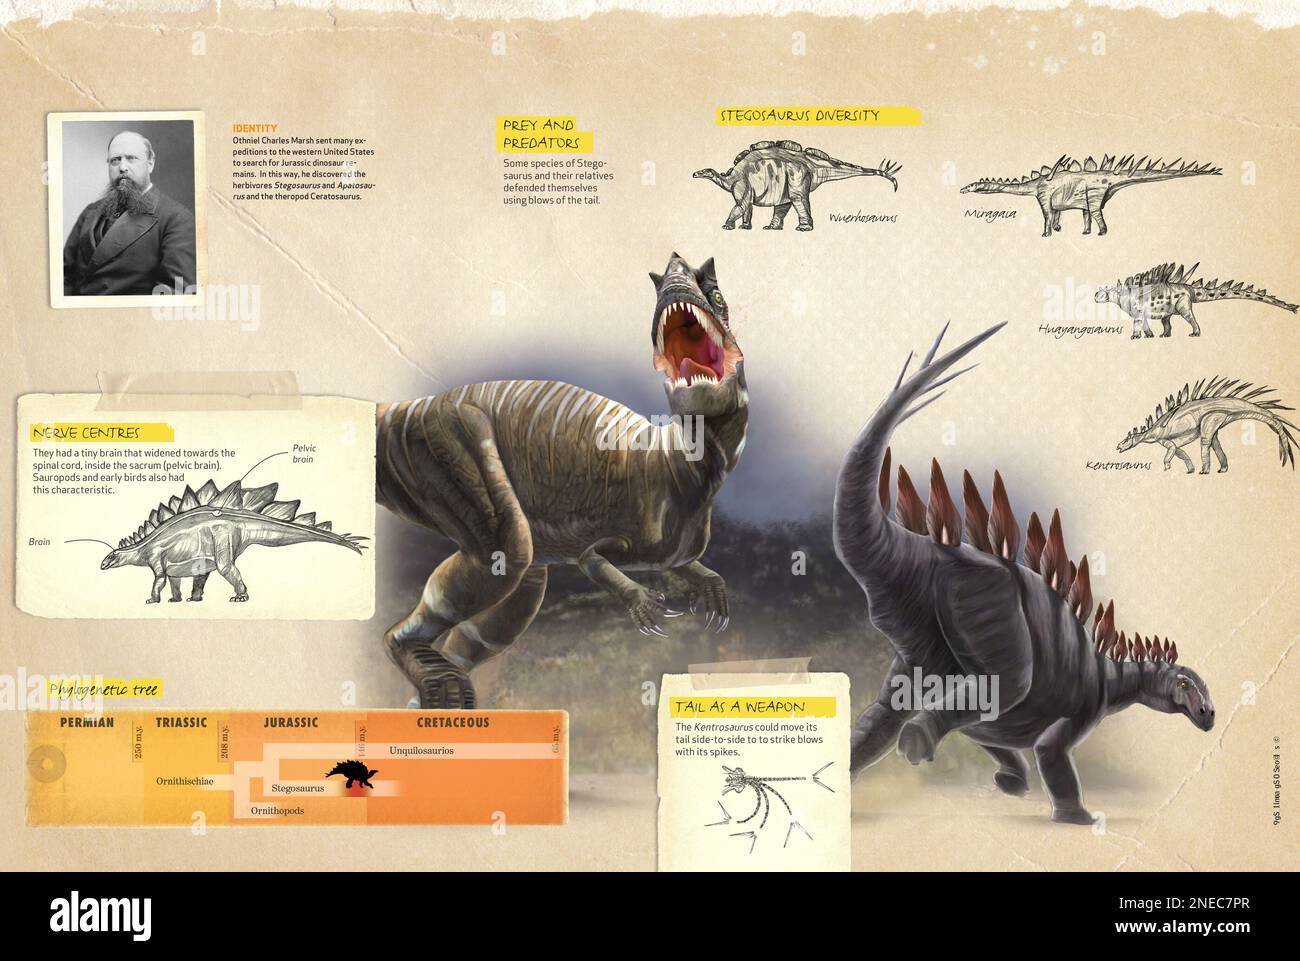 Infografica che mostra alcune caratteristiche dello Stegosaurus, un dinosauro giurassico scoperto negli Stati Uniti da Othniel Charles Marsh. [QuarkXPress (.qxp); 4842x3248]. Foto Stock